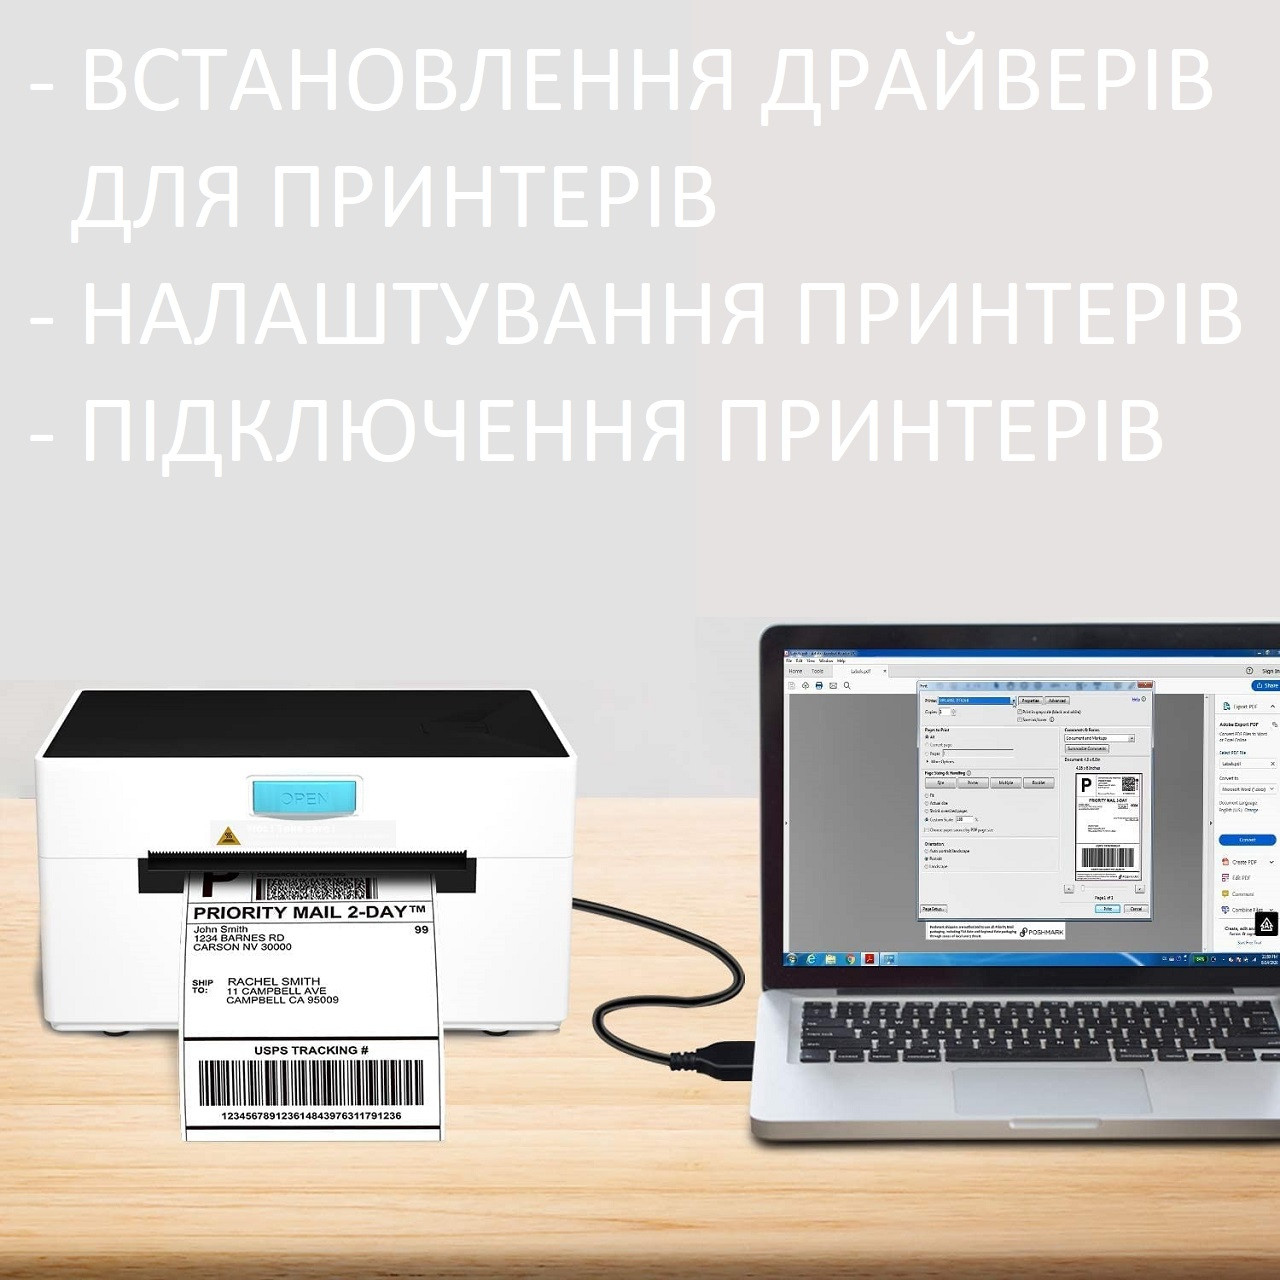 Встановлення з’ єднання з принтером чеків/ етикеток